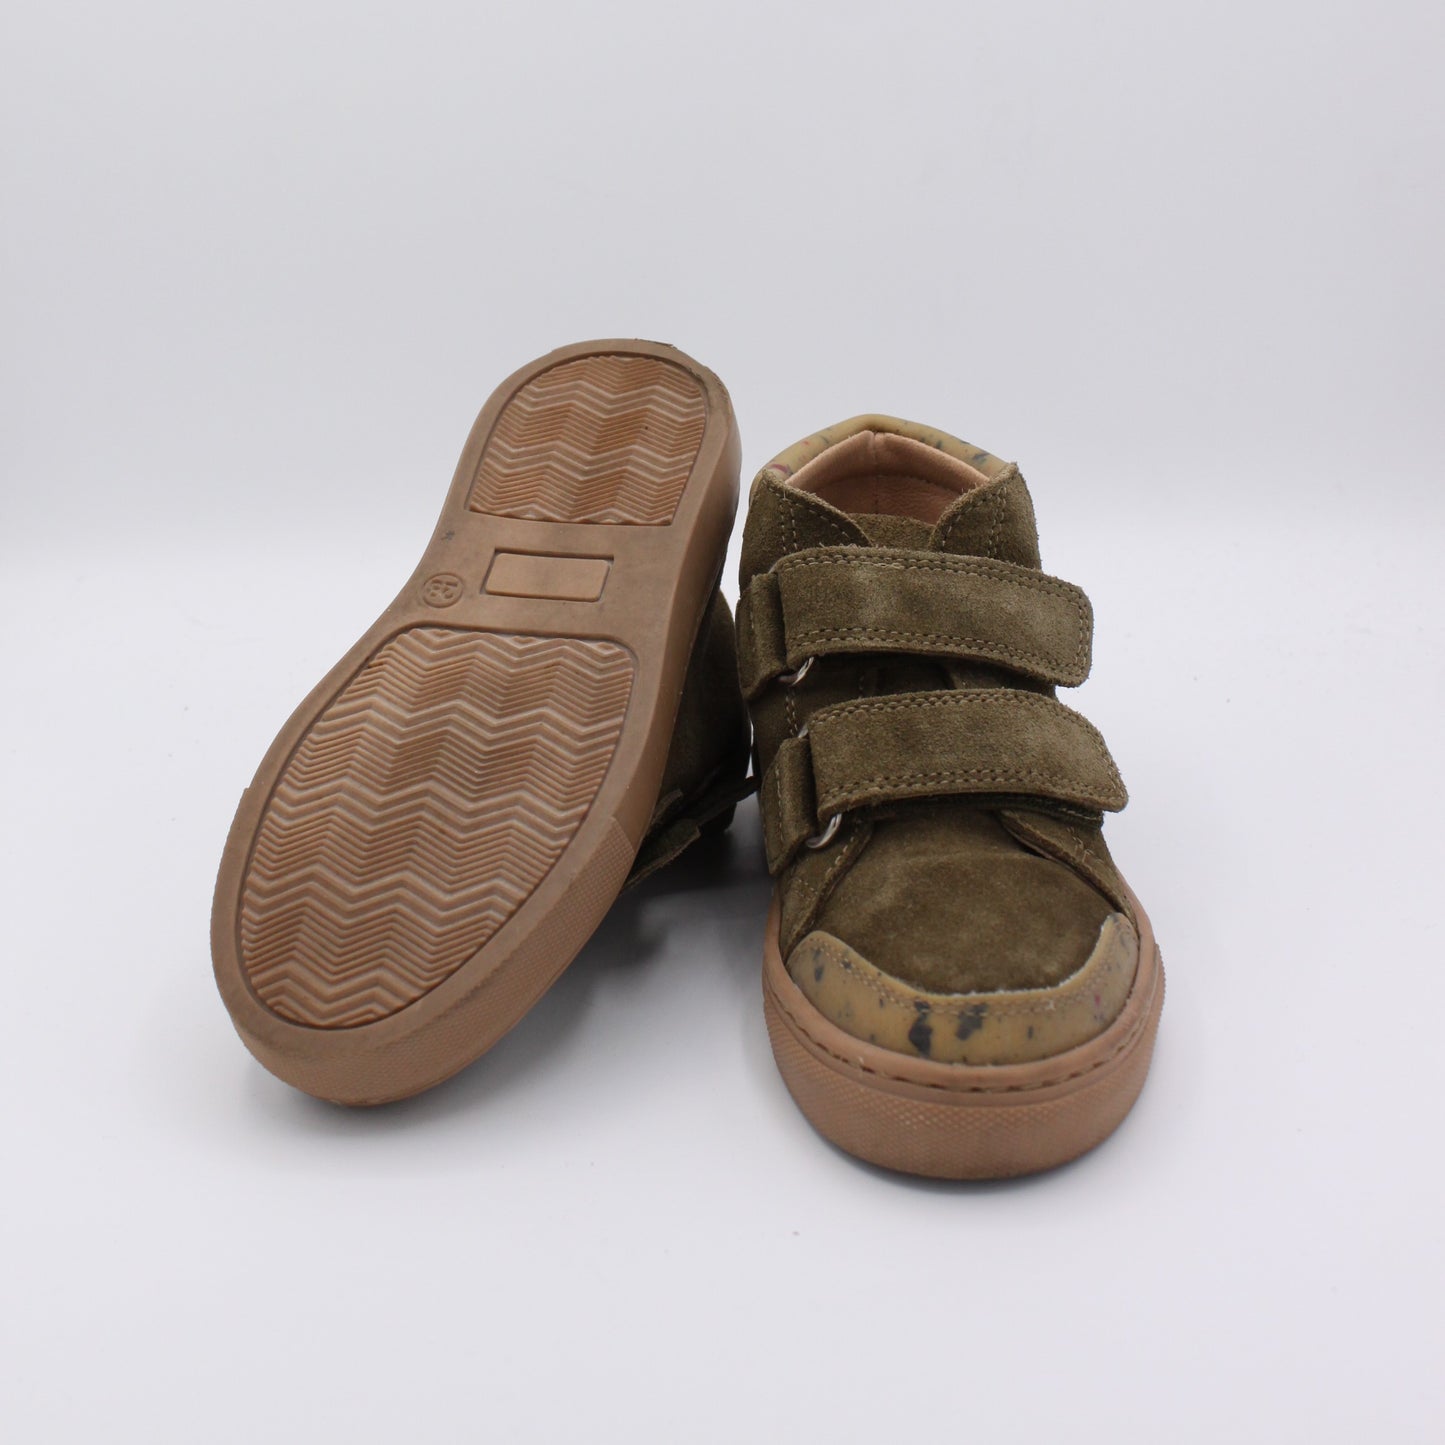 Pre-loved Schuhe (EU 28)